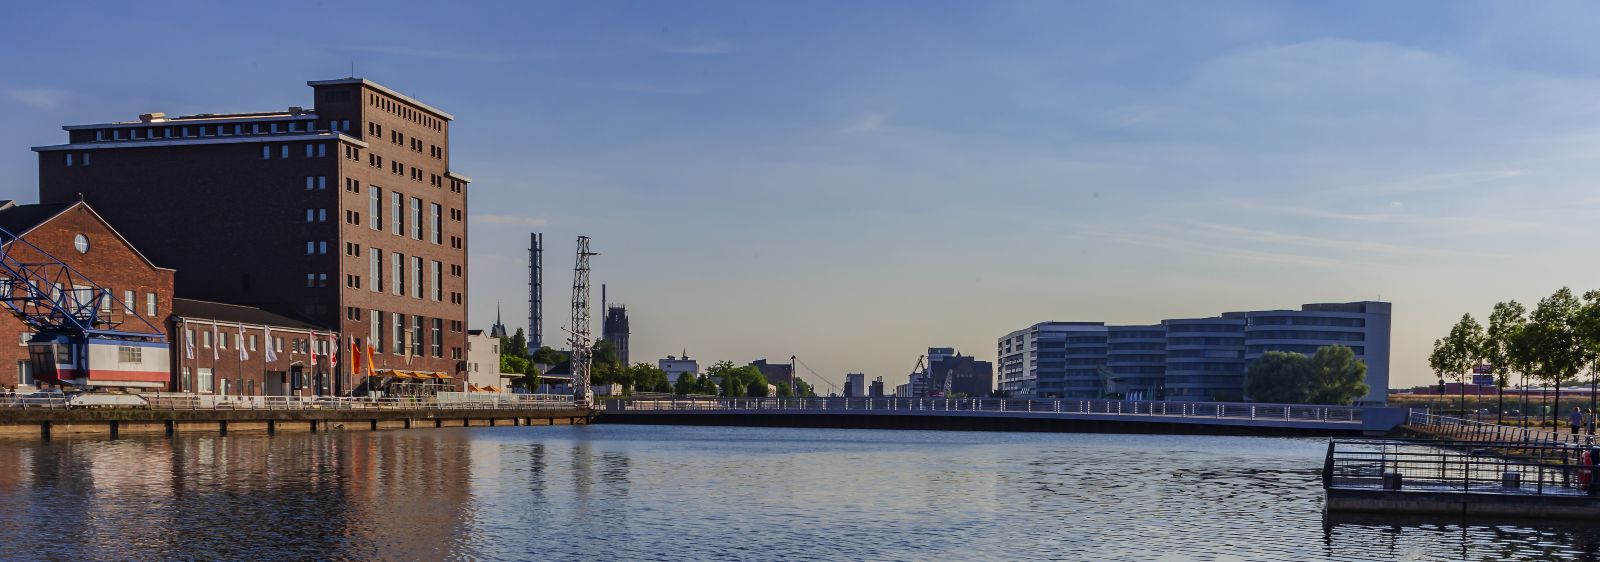 Panorama des Duisburger Binnenhafens